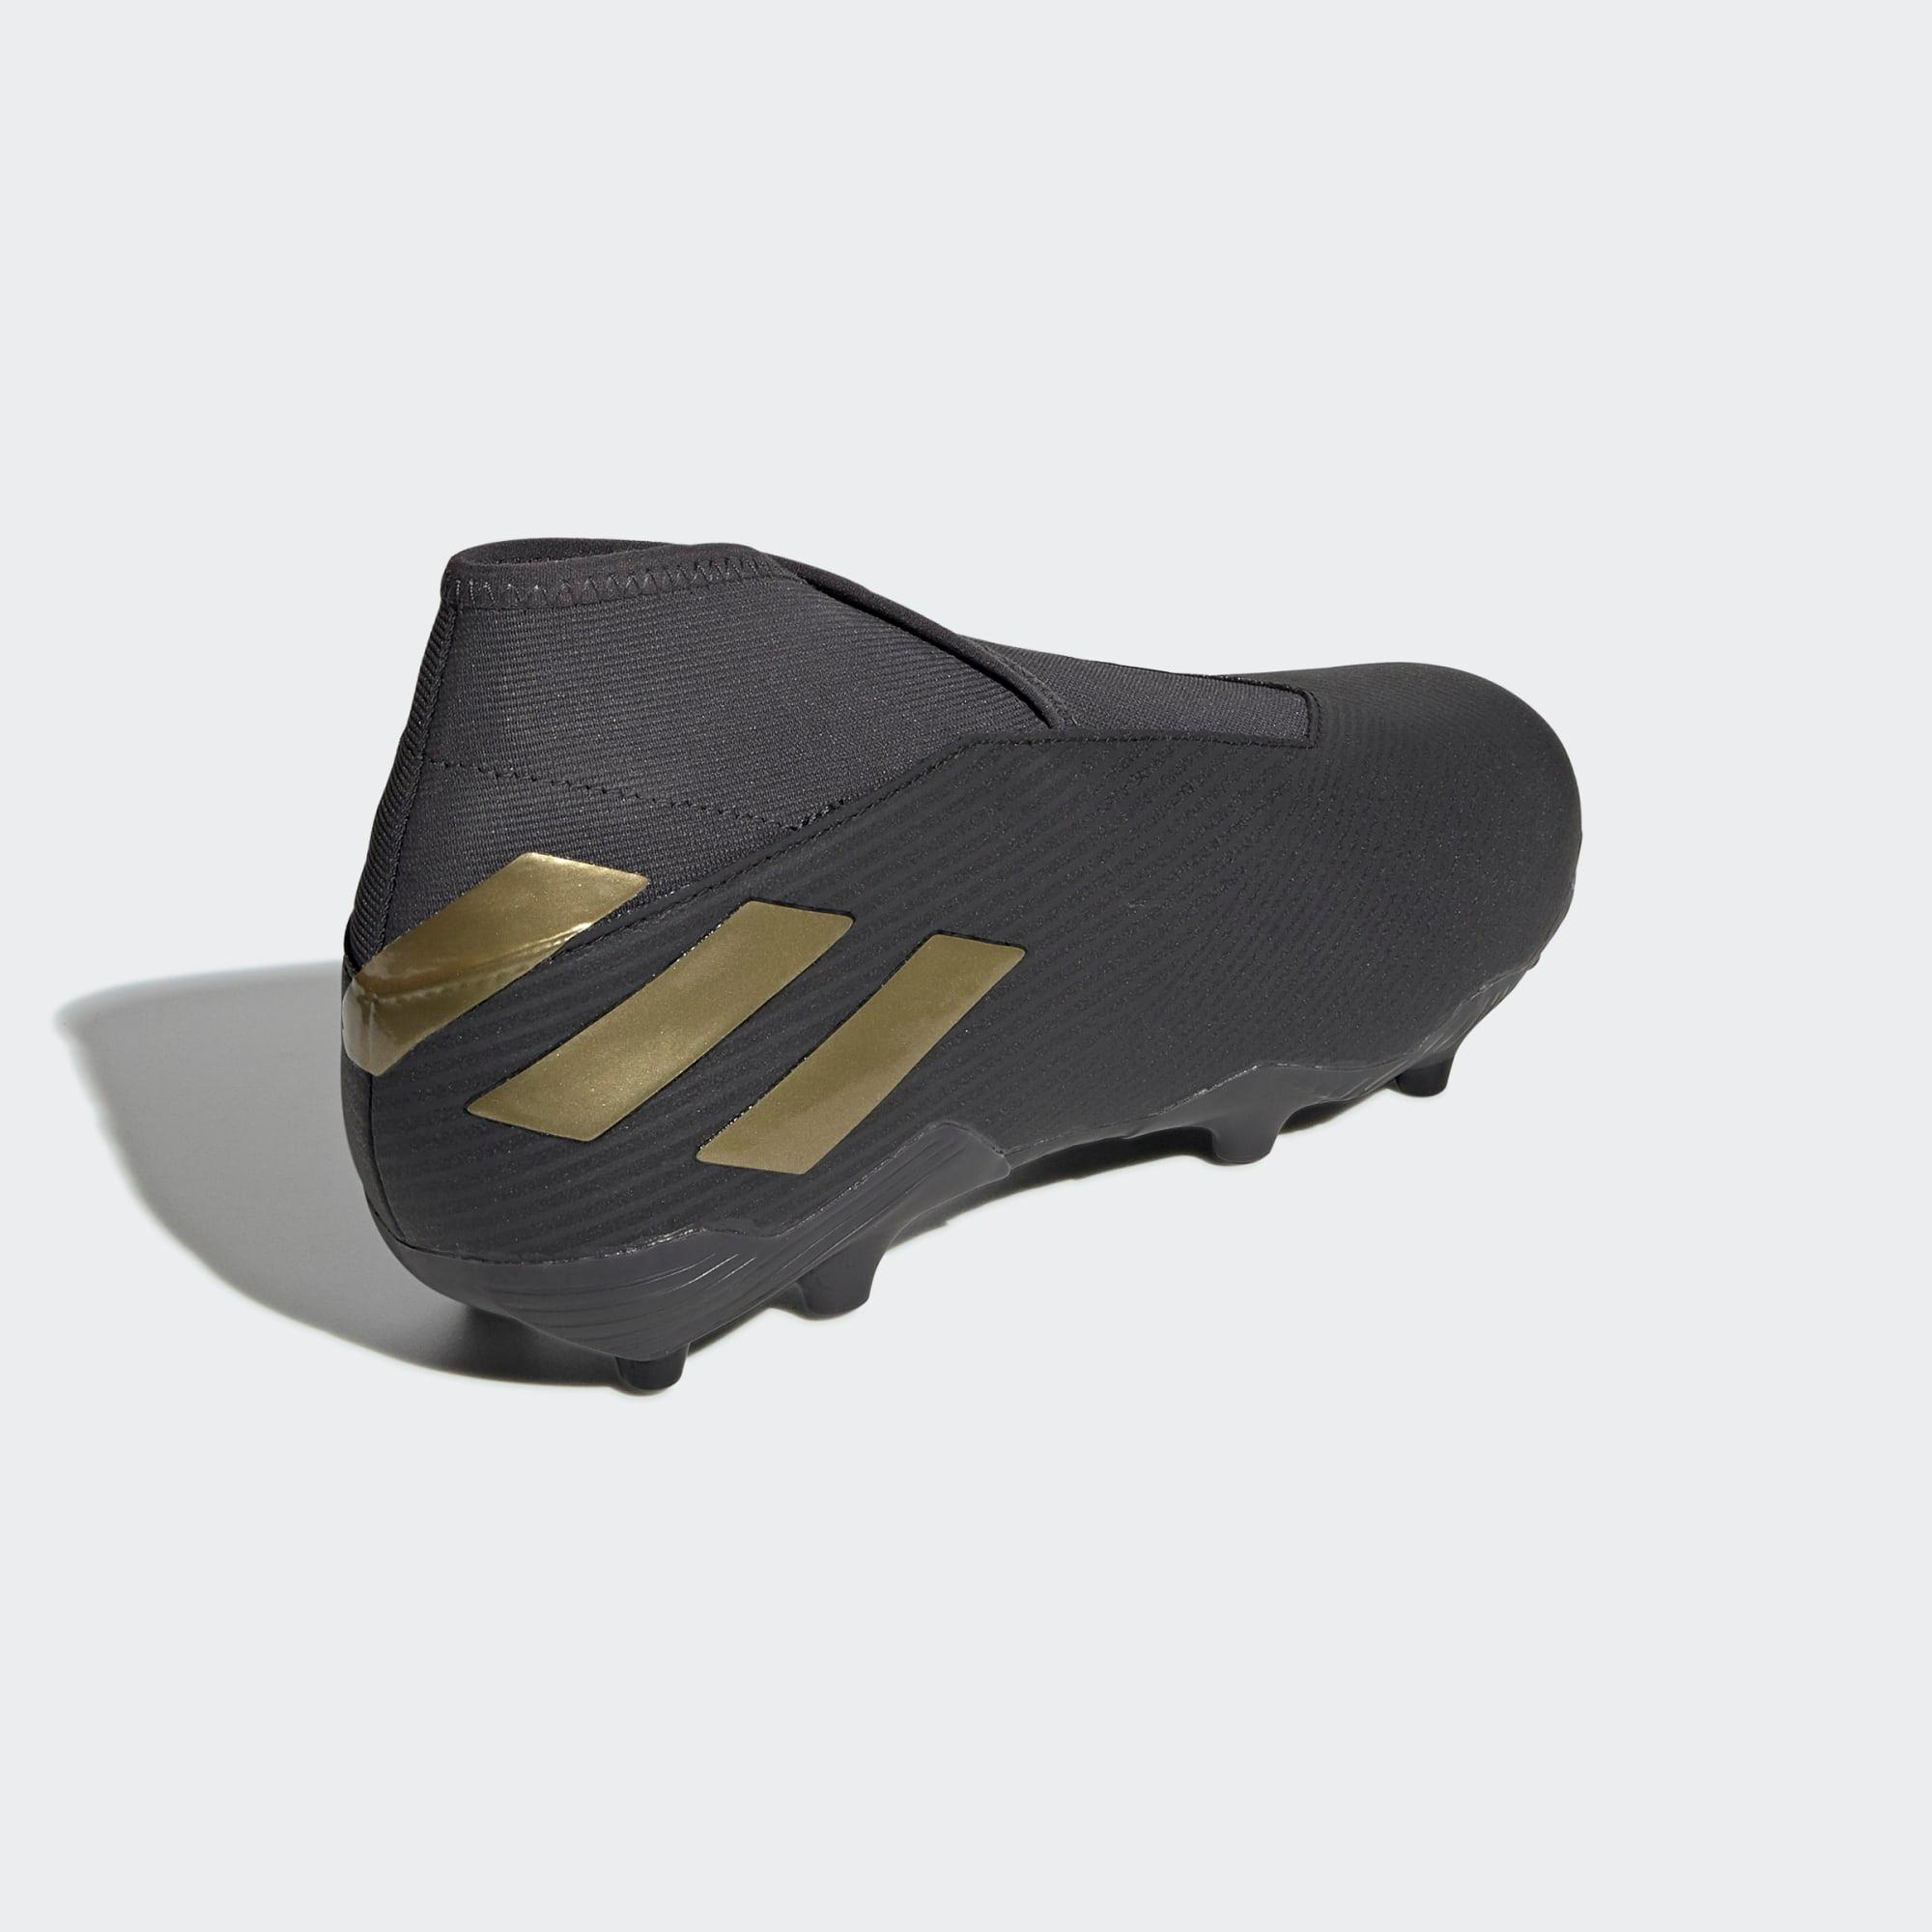 Adidas Nemeziz 19.3 FG Fußballschuh Fußballschuhe Core Black / Gold Met. / Utility Black Online Shop von SportScheck kaufen